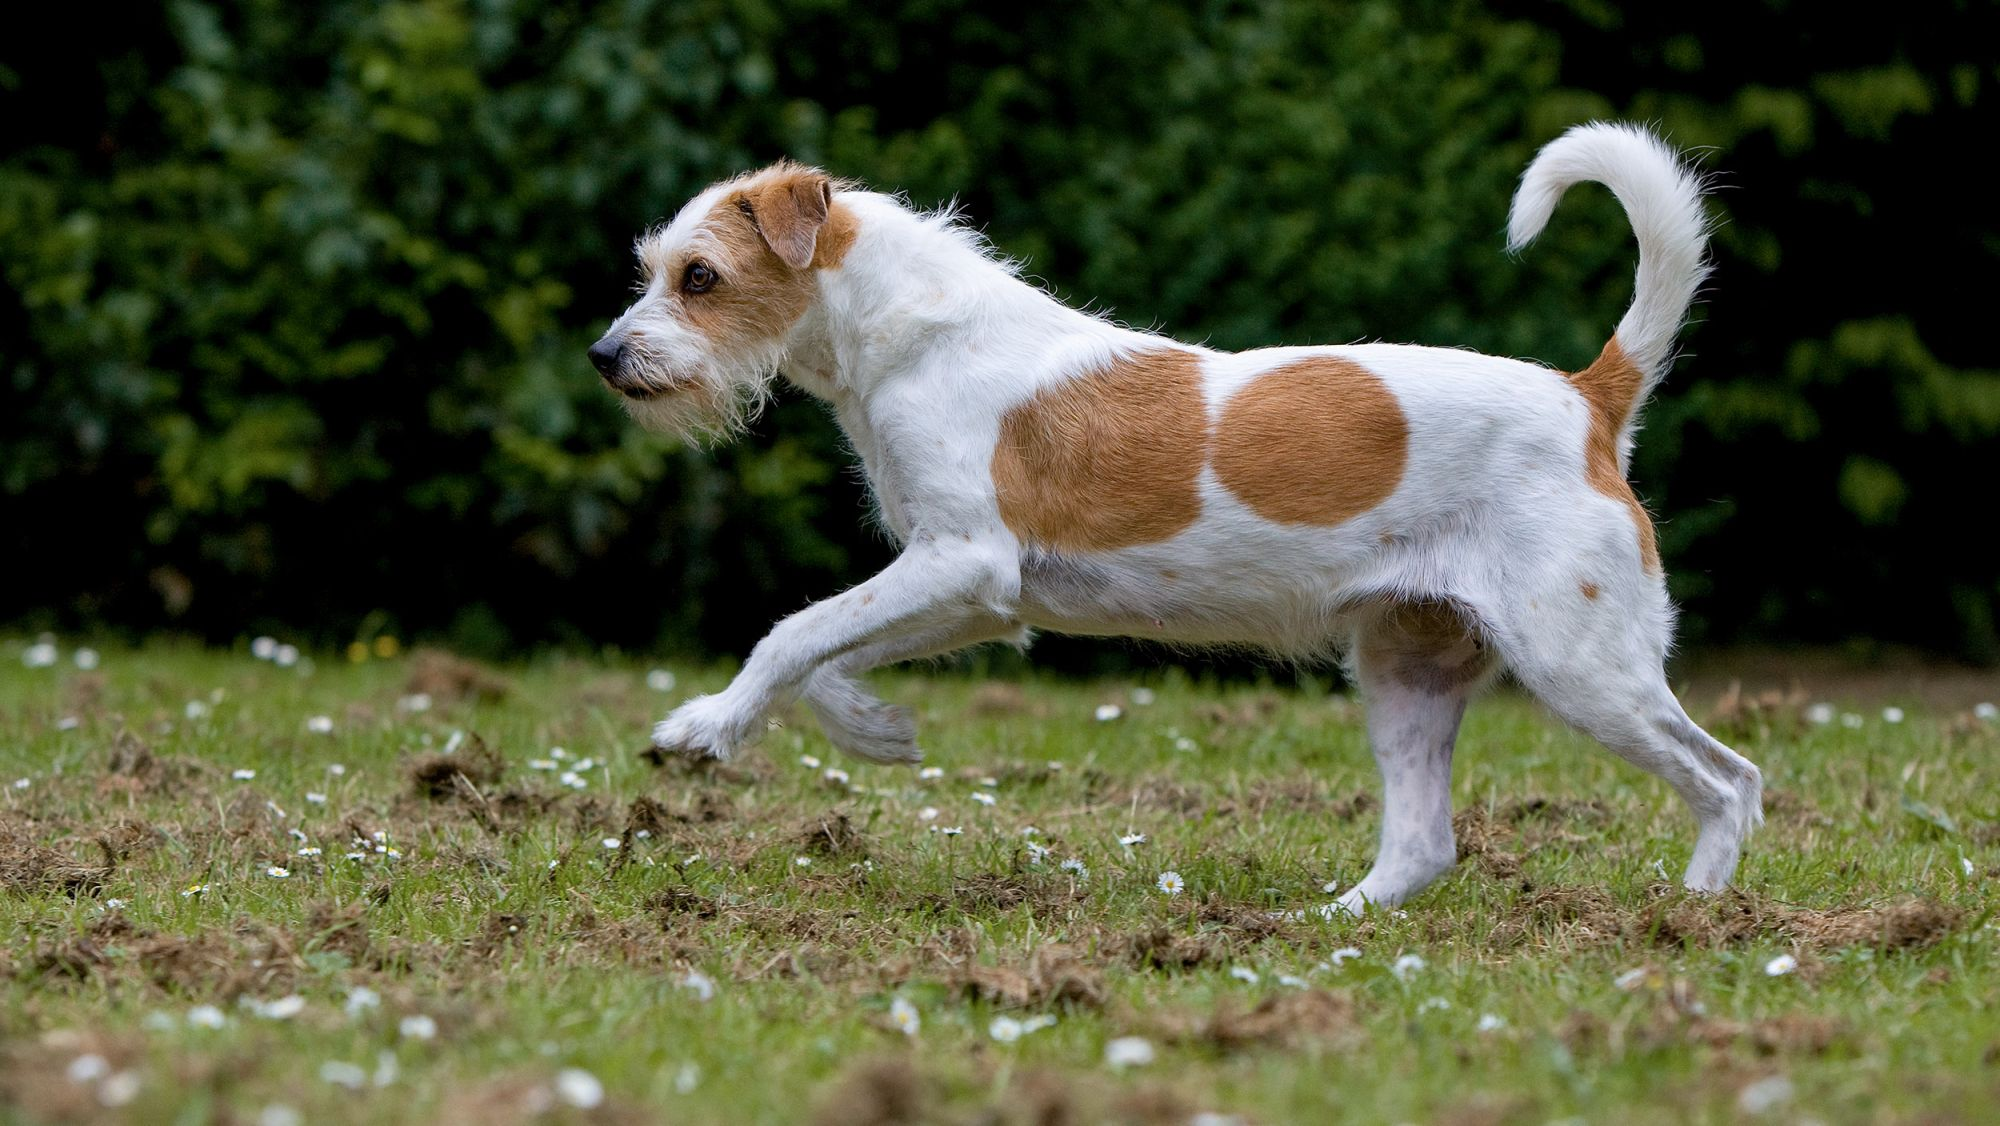 Jack Russell Terrier walking outside in a garden